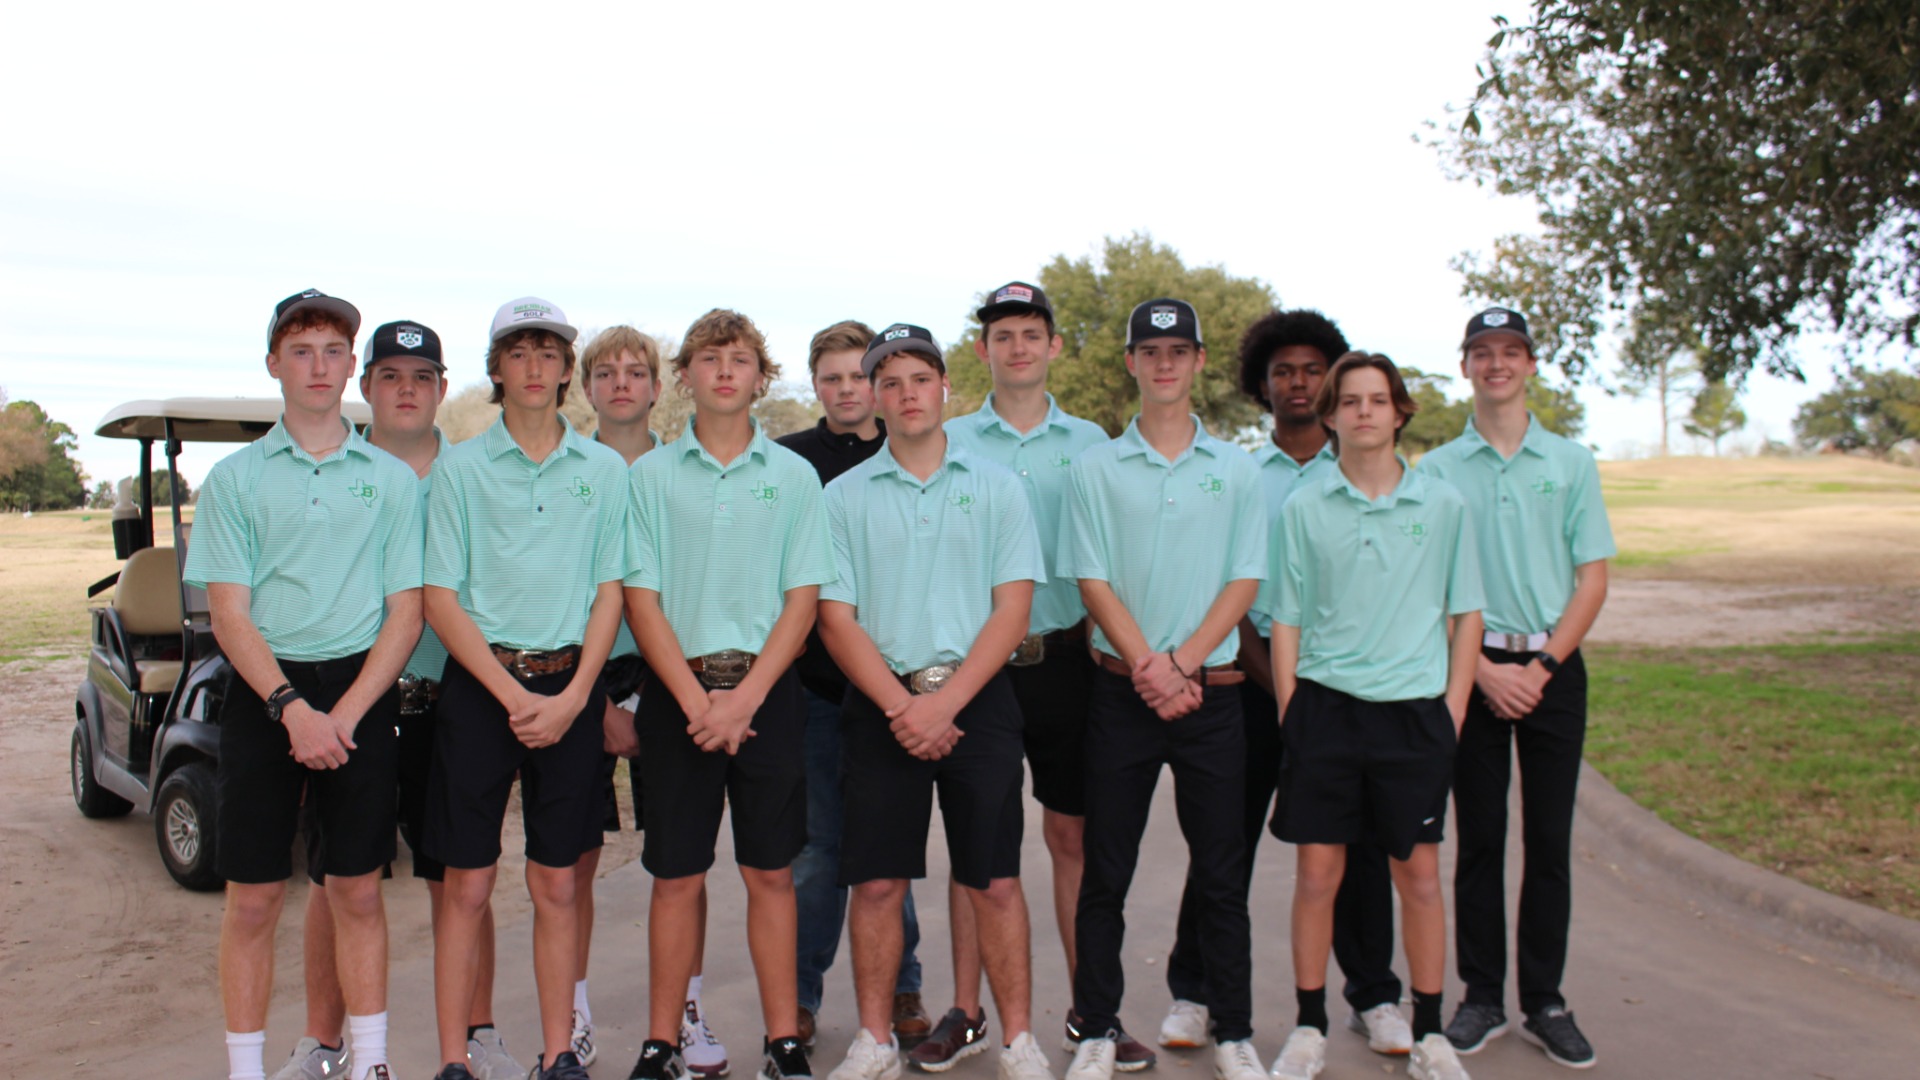 Slide 5 - Boys Golf Team